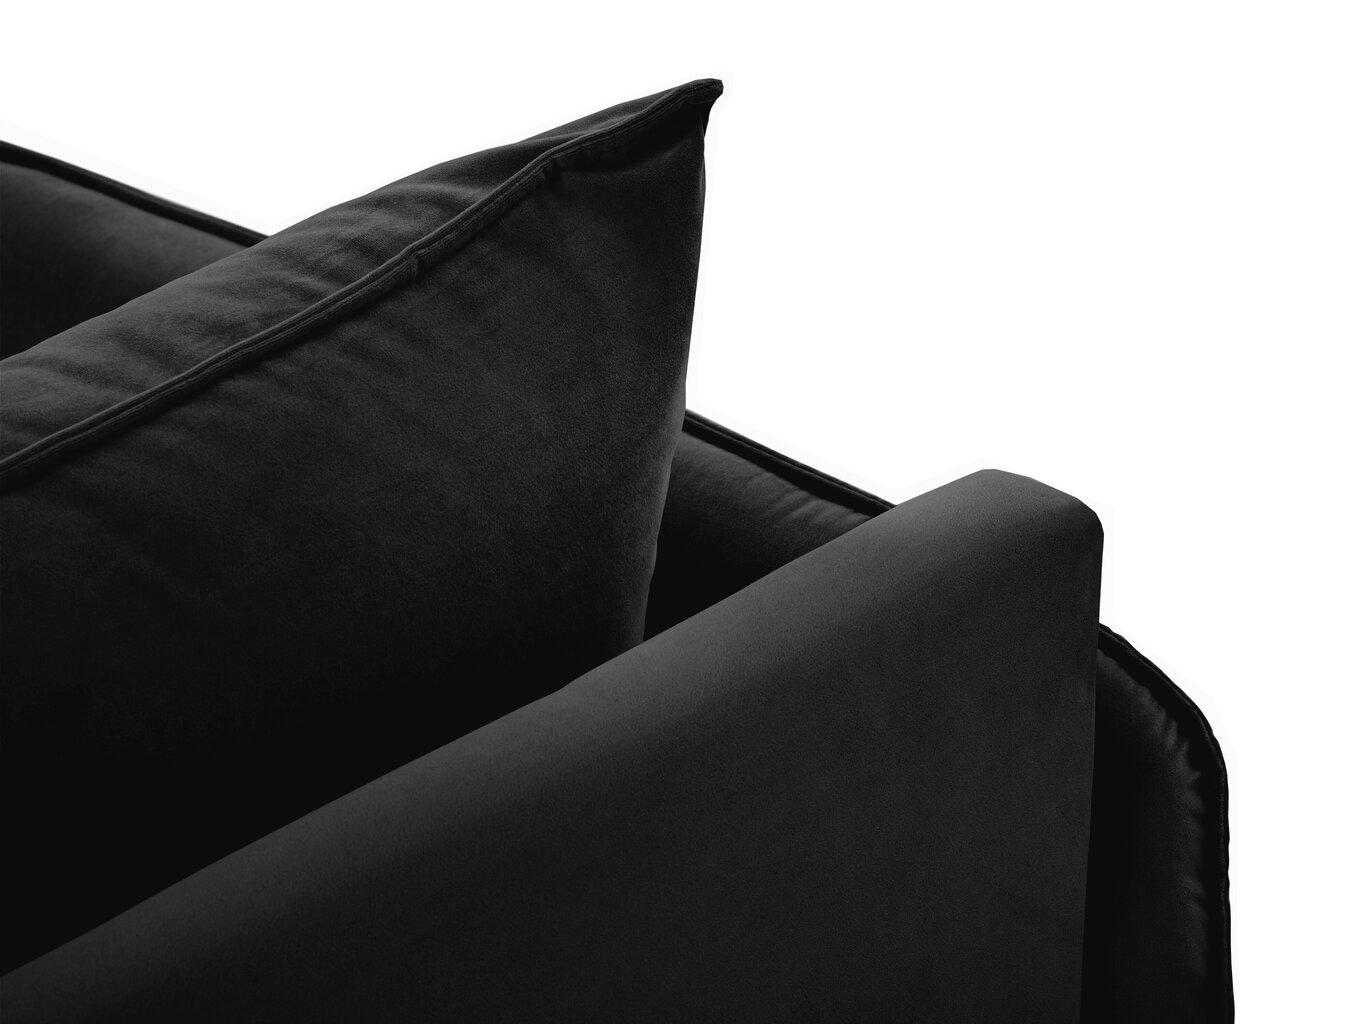 Minkštų baldų komplektas Cosmopolitan Design Florence, juodas kaina ir informacija | Minkštų baldų komplektai | pigu.lt